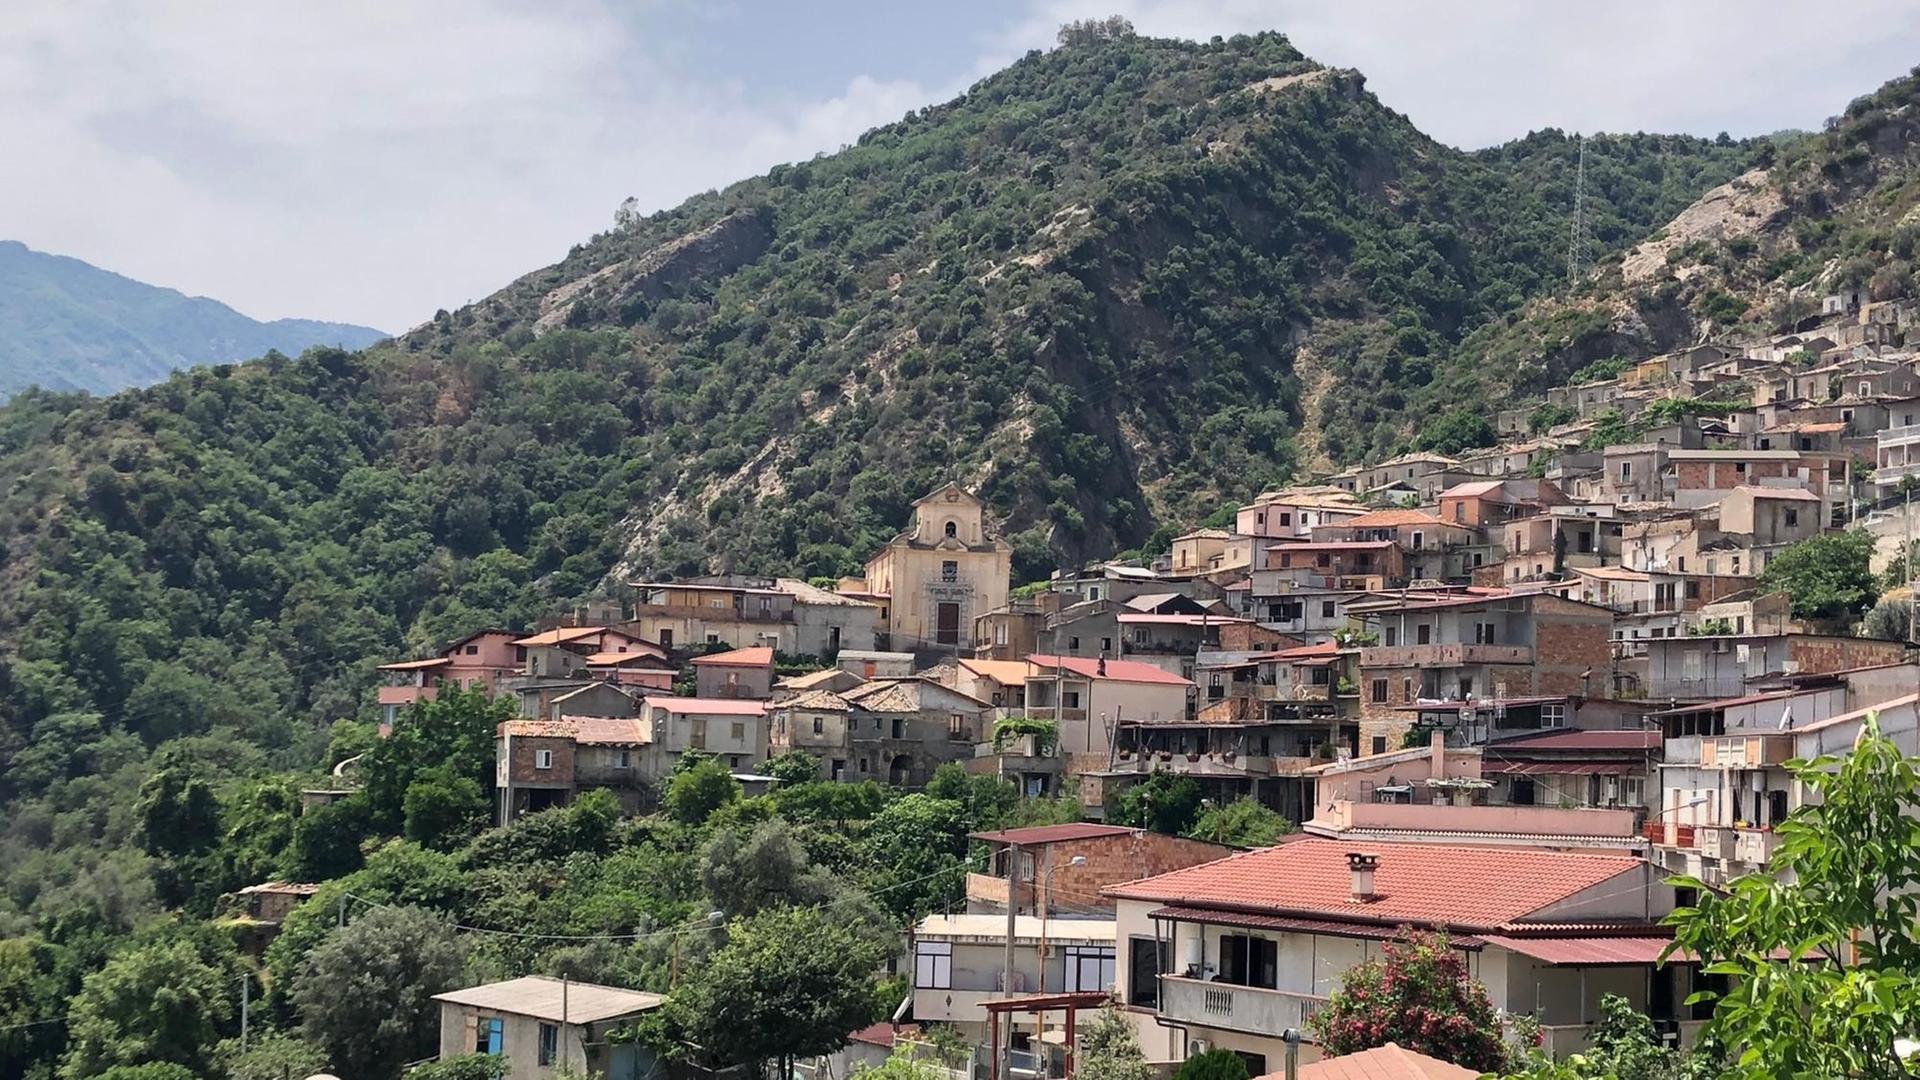 Mafia-Hochburg unter Fremdverwaltung: San Luca in Kalabrien. Zu sehen sind Häuser an einem Berghang mit terracotta-farbigen, flachen Dächern.